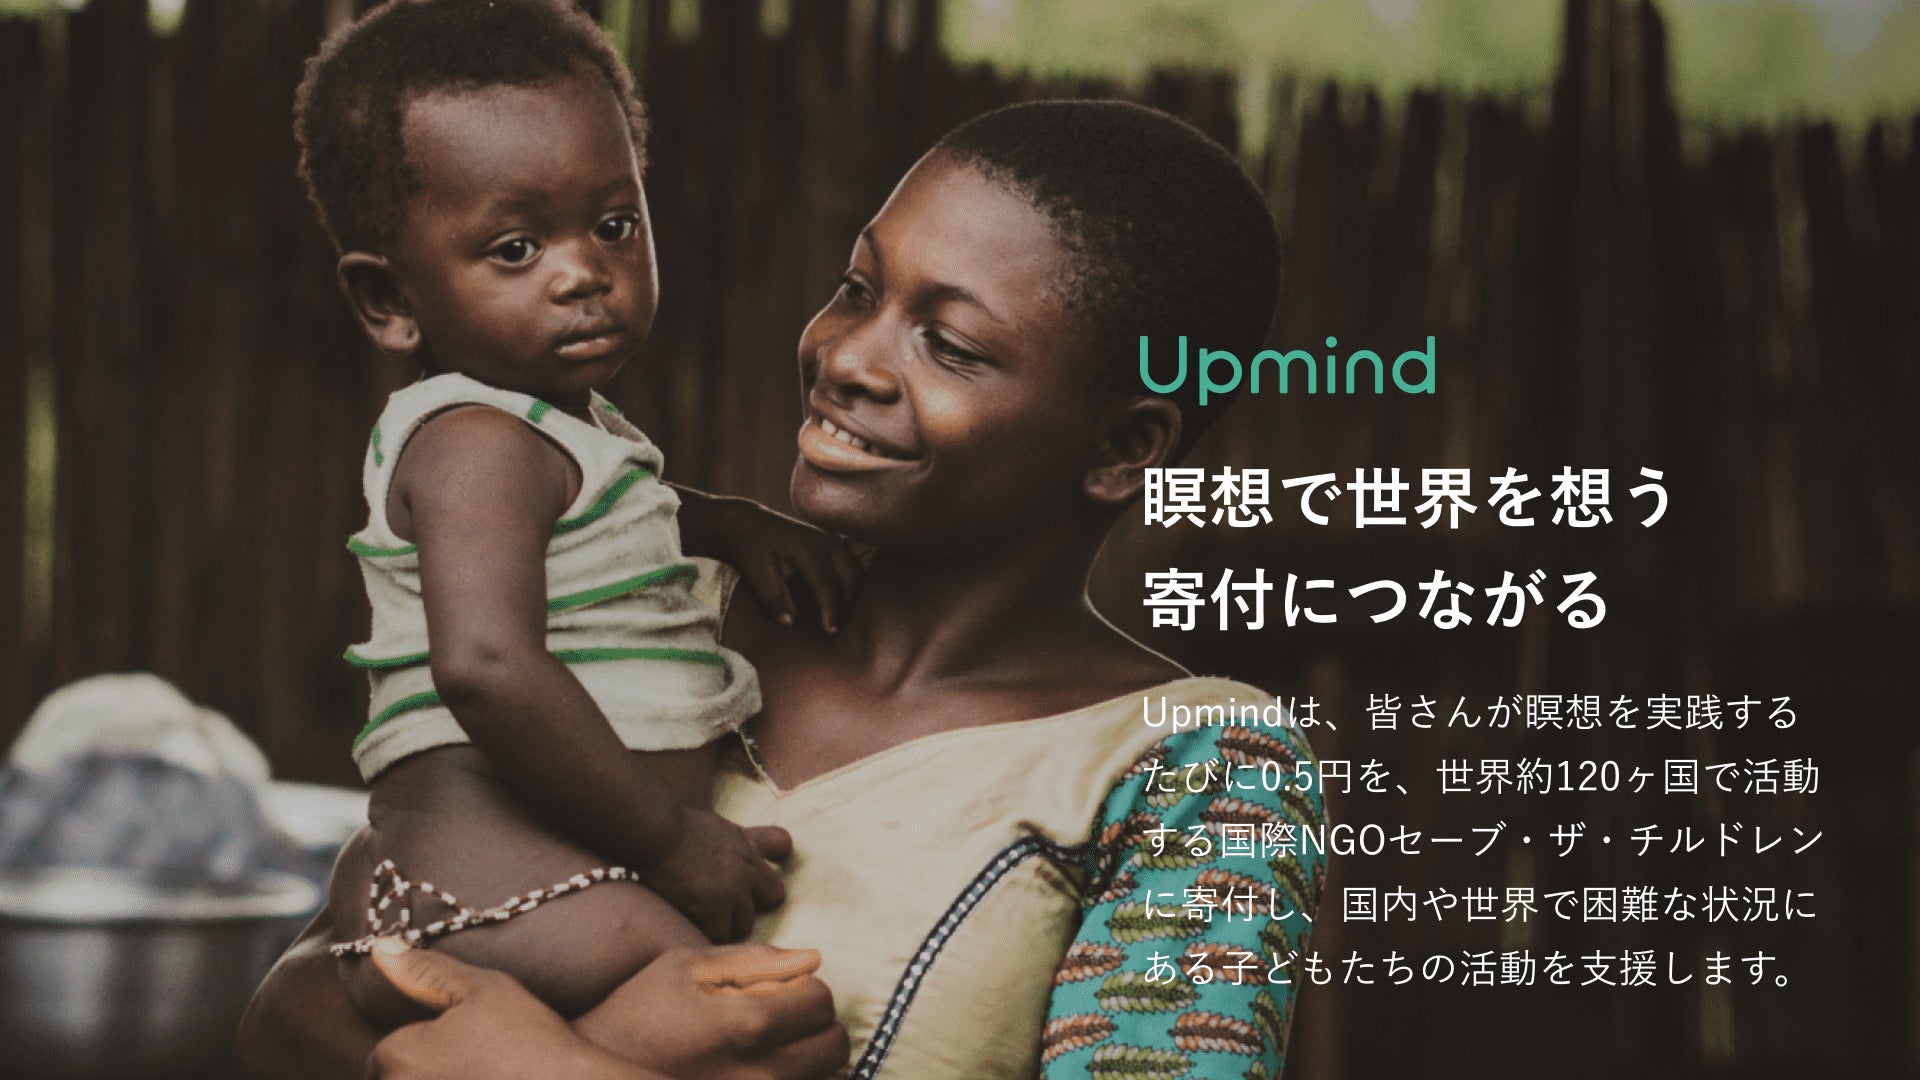 【Upmind】瞑想で世界を想う。ユーザーが瞑想を実践するたびに、セーブ・ザ・チルドレンを通して、国内や世界で困難な状況にある子どもたちを支援するために寄付を開始のサブ画像1